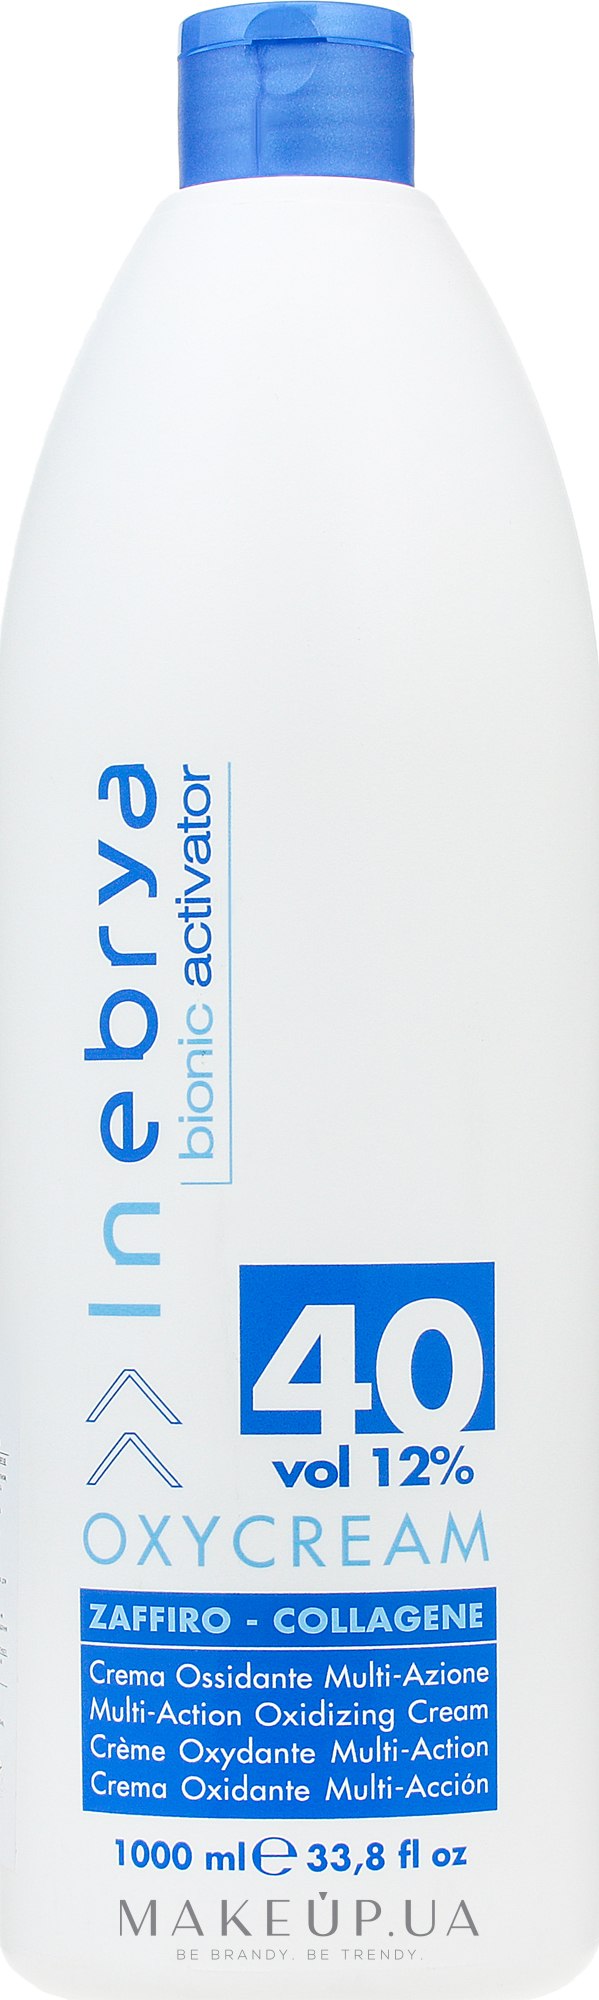 Окси-крем "Сапфир-коллаген" 40, 12% - Inebrya Bionic Activator Oxycream 40 Vol 12% — фото 1000ml